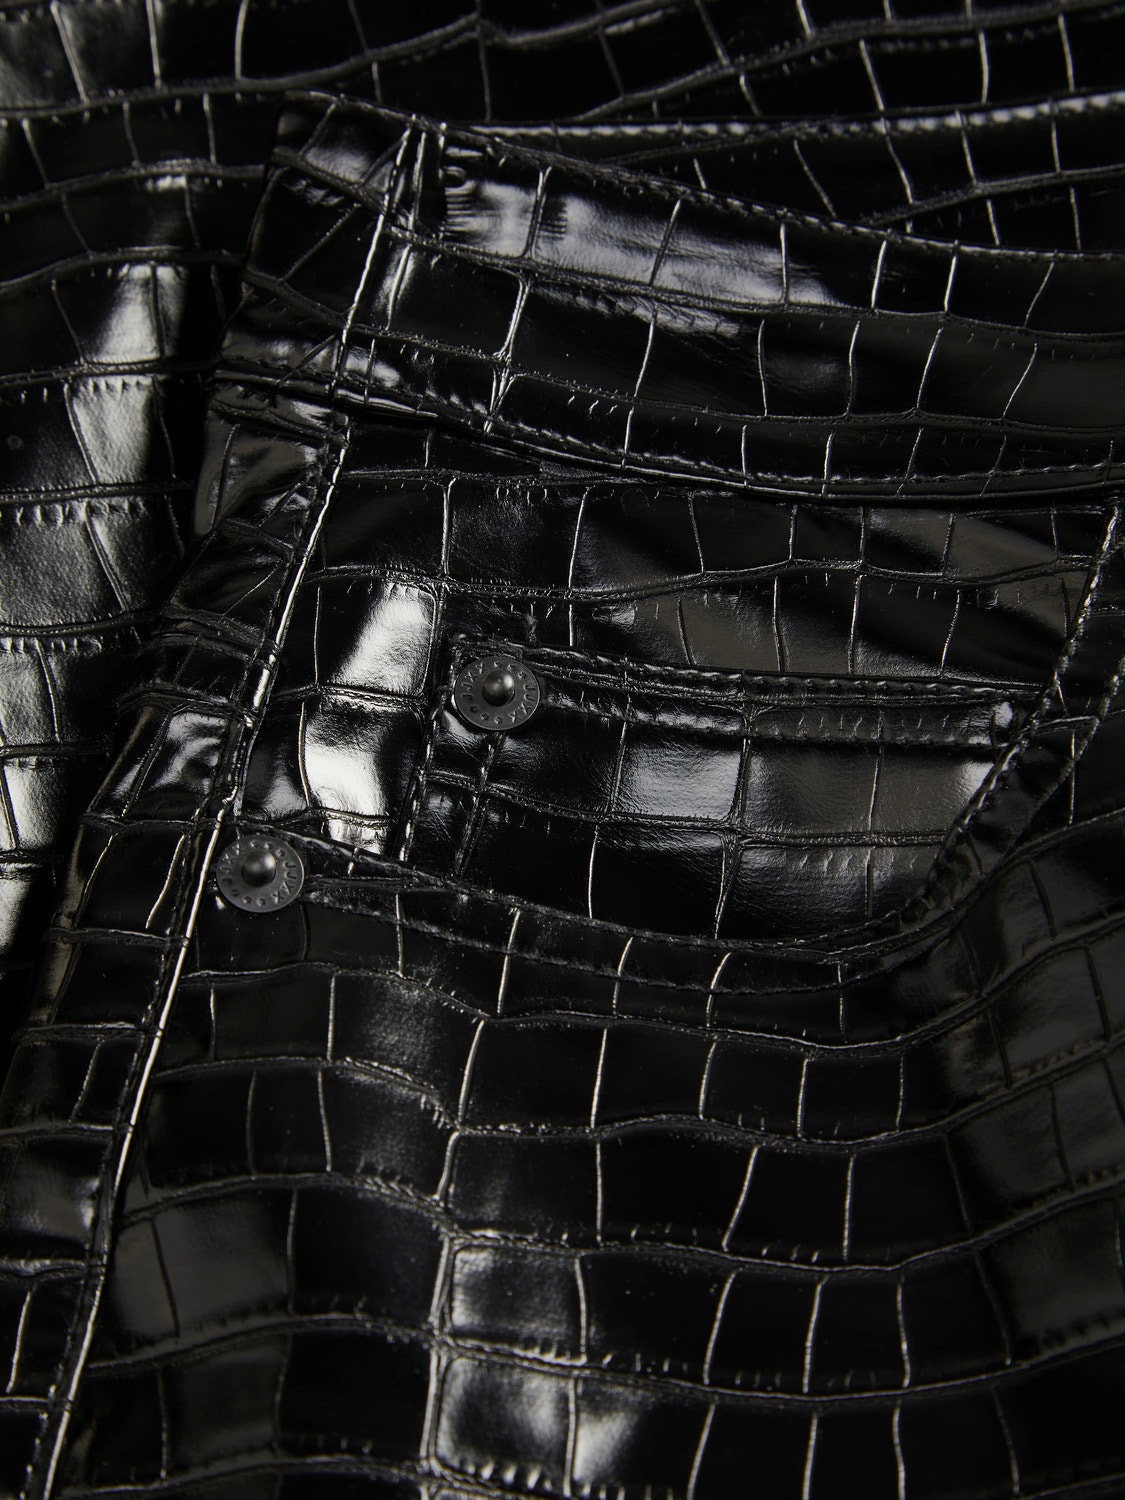 JJXX JXKENYA Spodnie ze sztucznej skóry -Black - 12201557